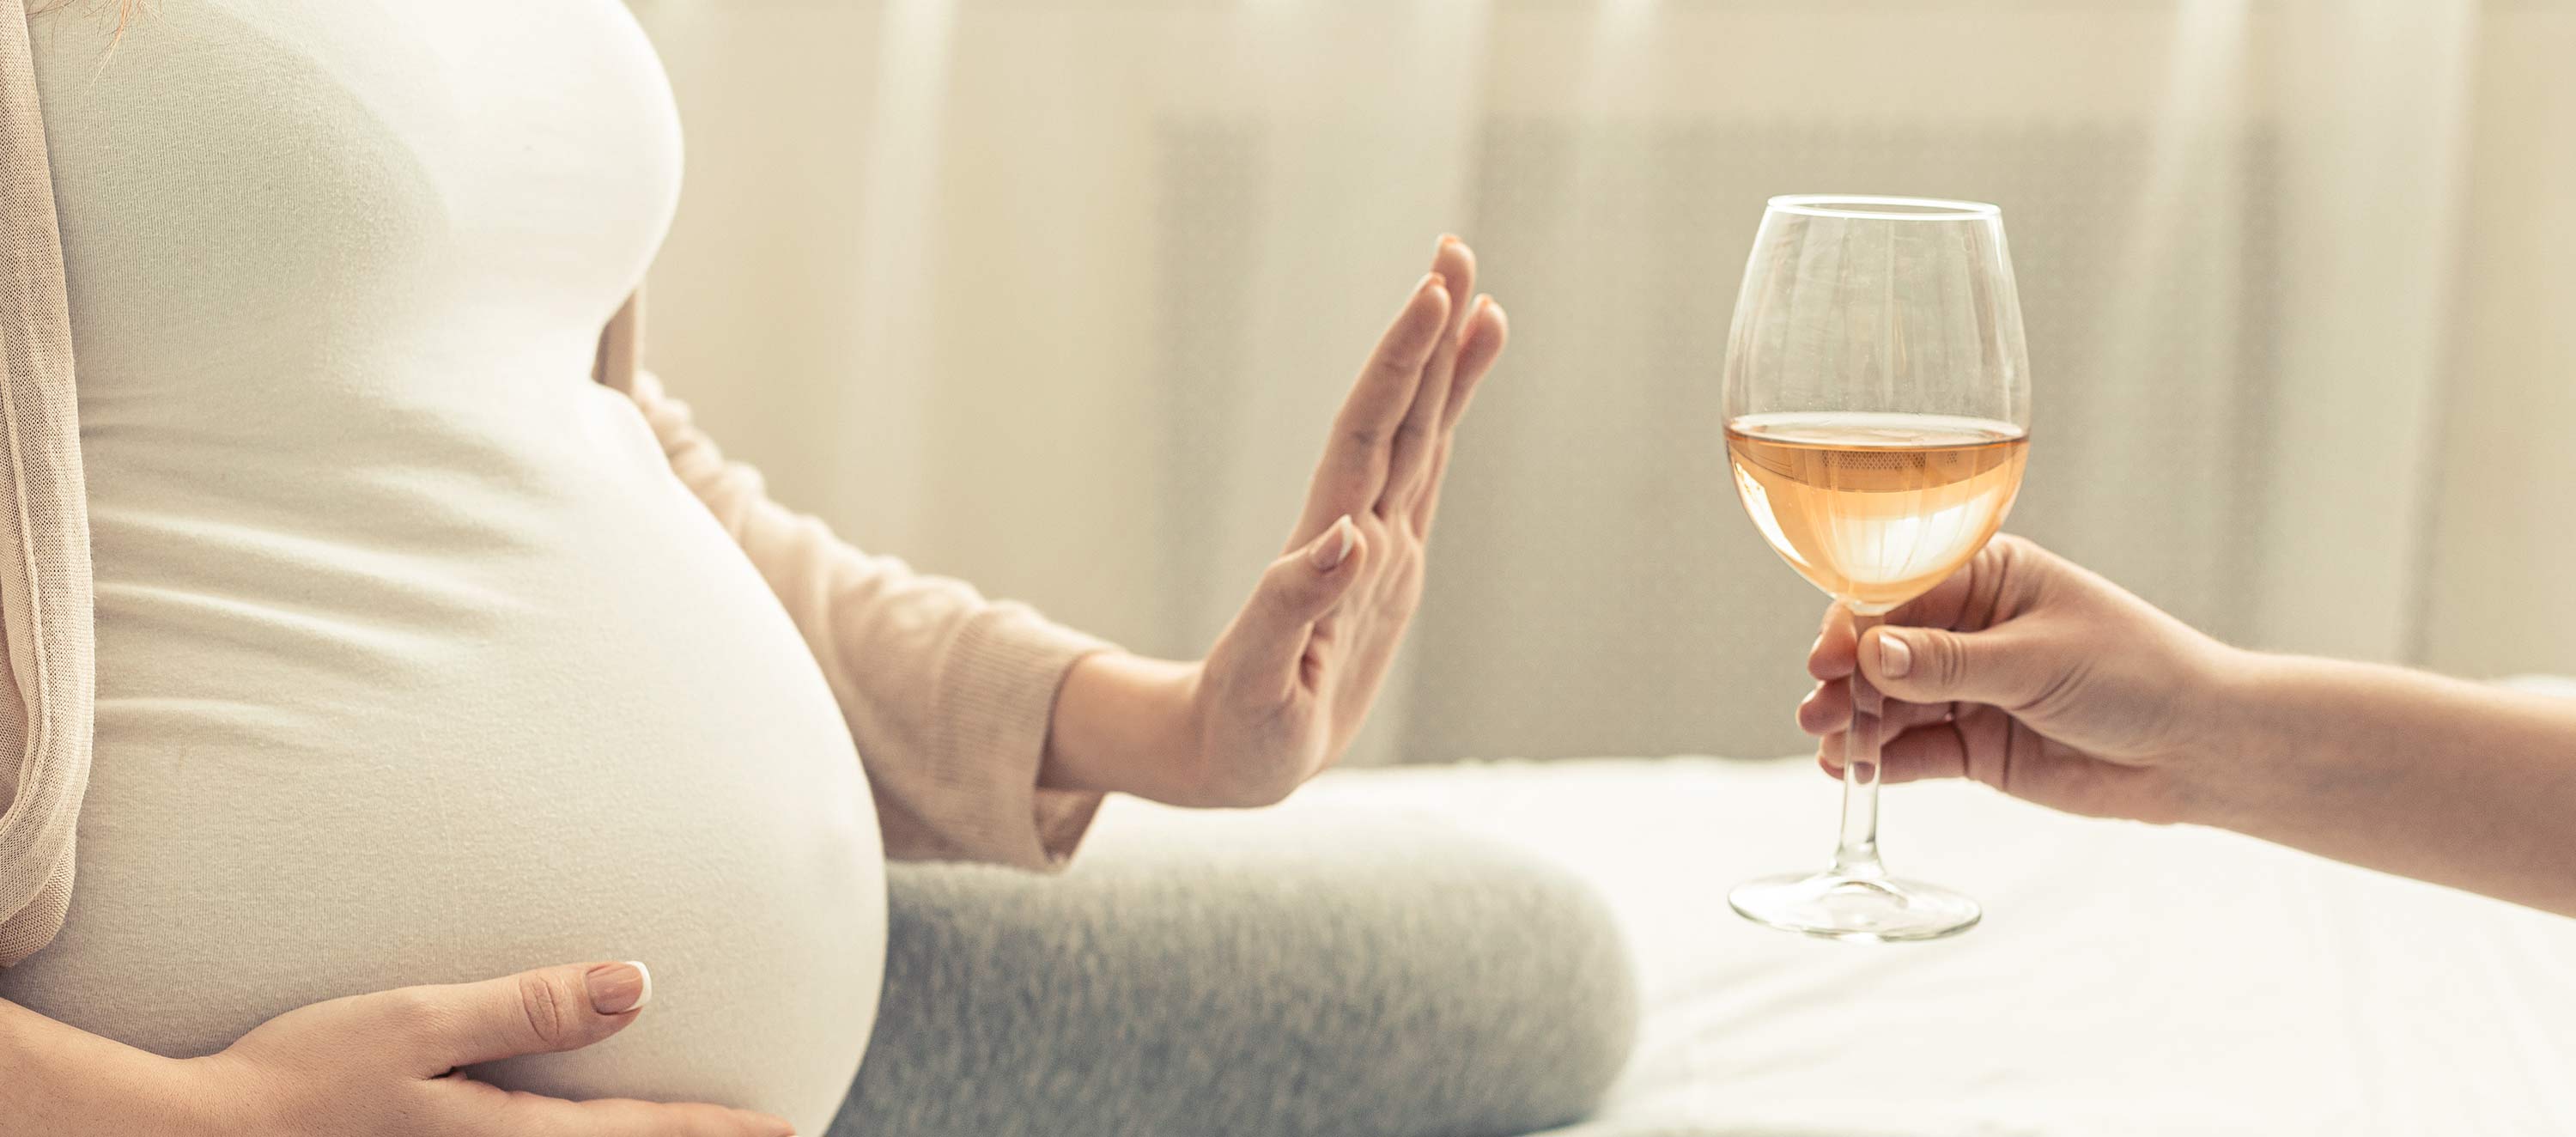 Schwangere lehnt ein Glas Wein ab. 